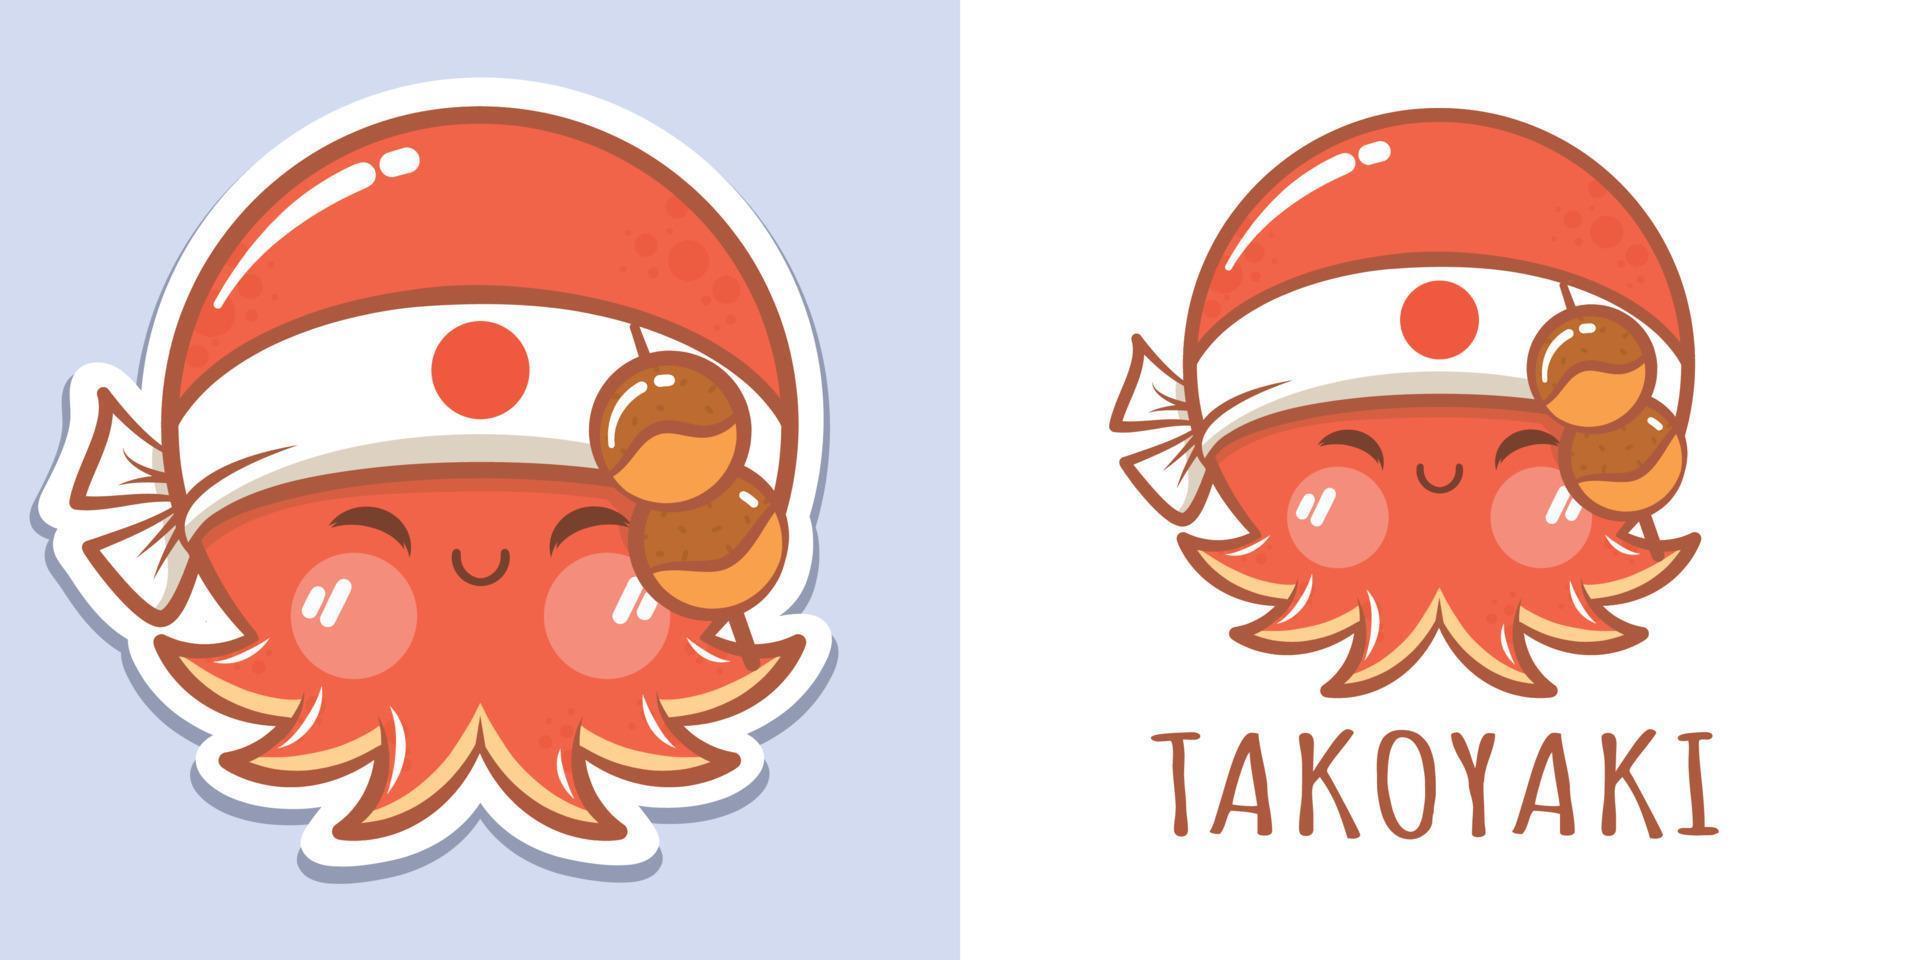 un lindo personaje de dibujos animados de pulpo con el logotipo de takoyaki y la ilustración de la mascota vector